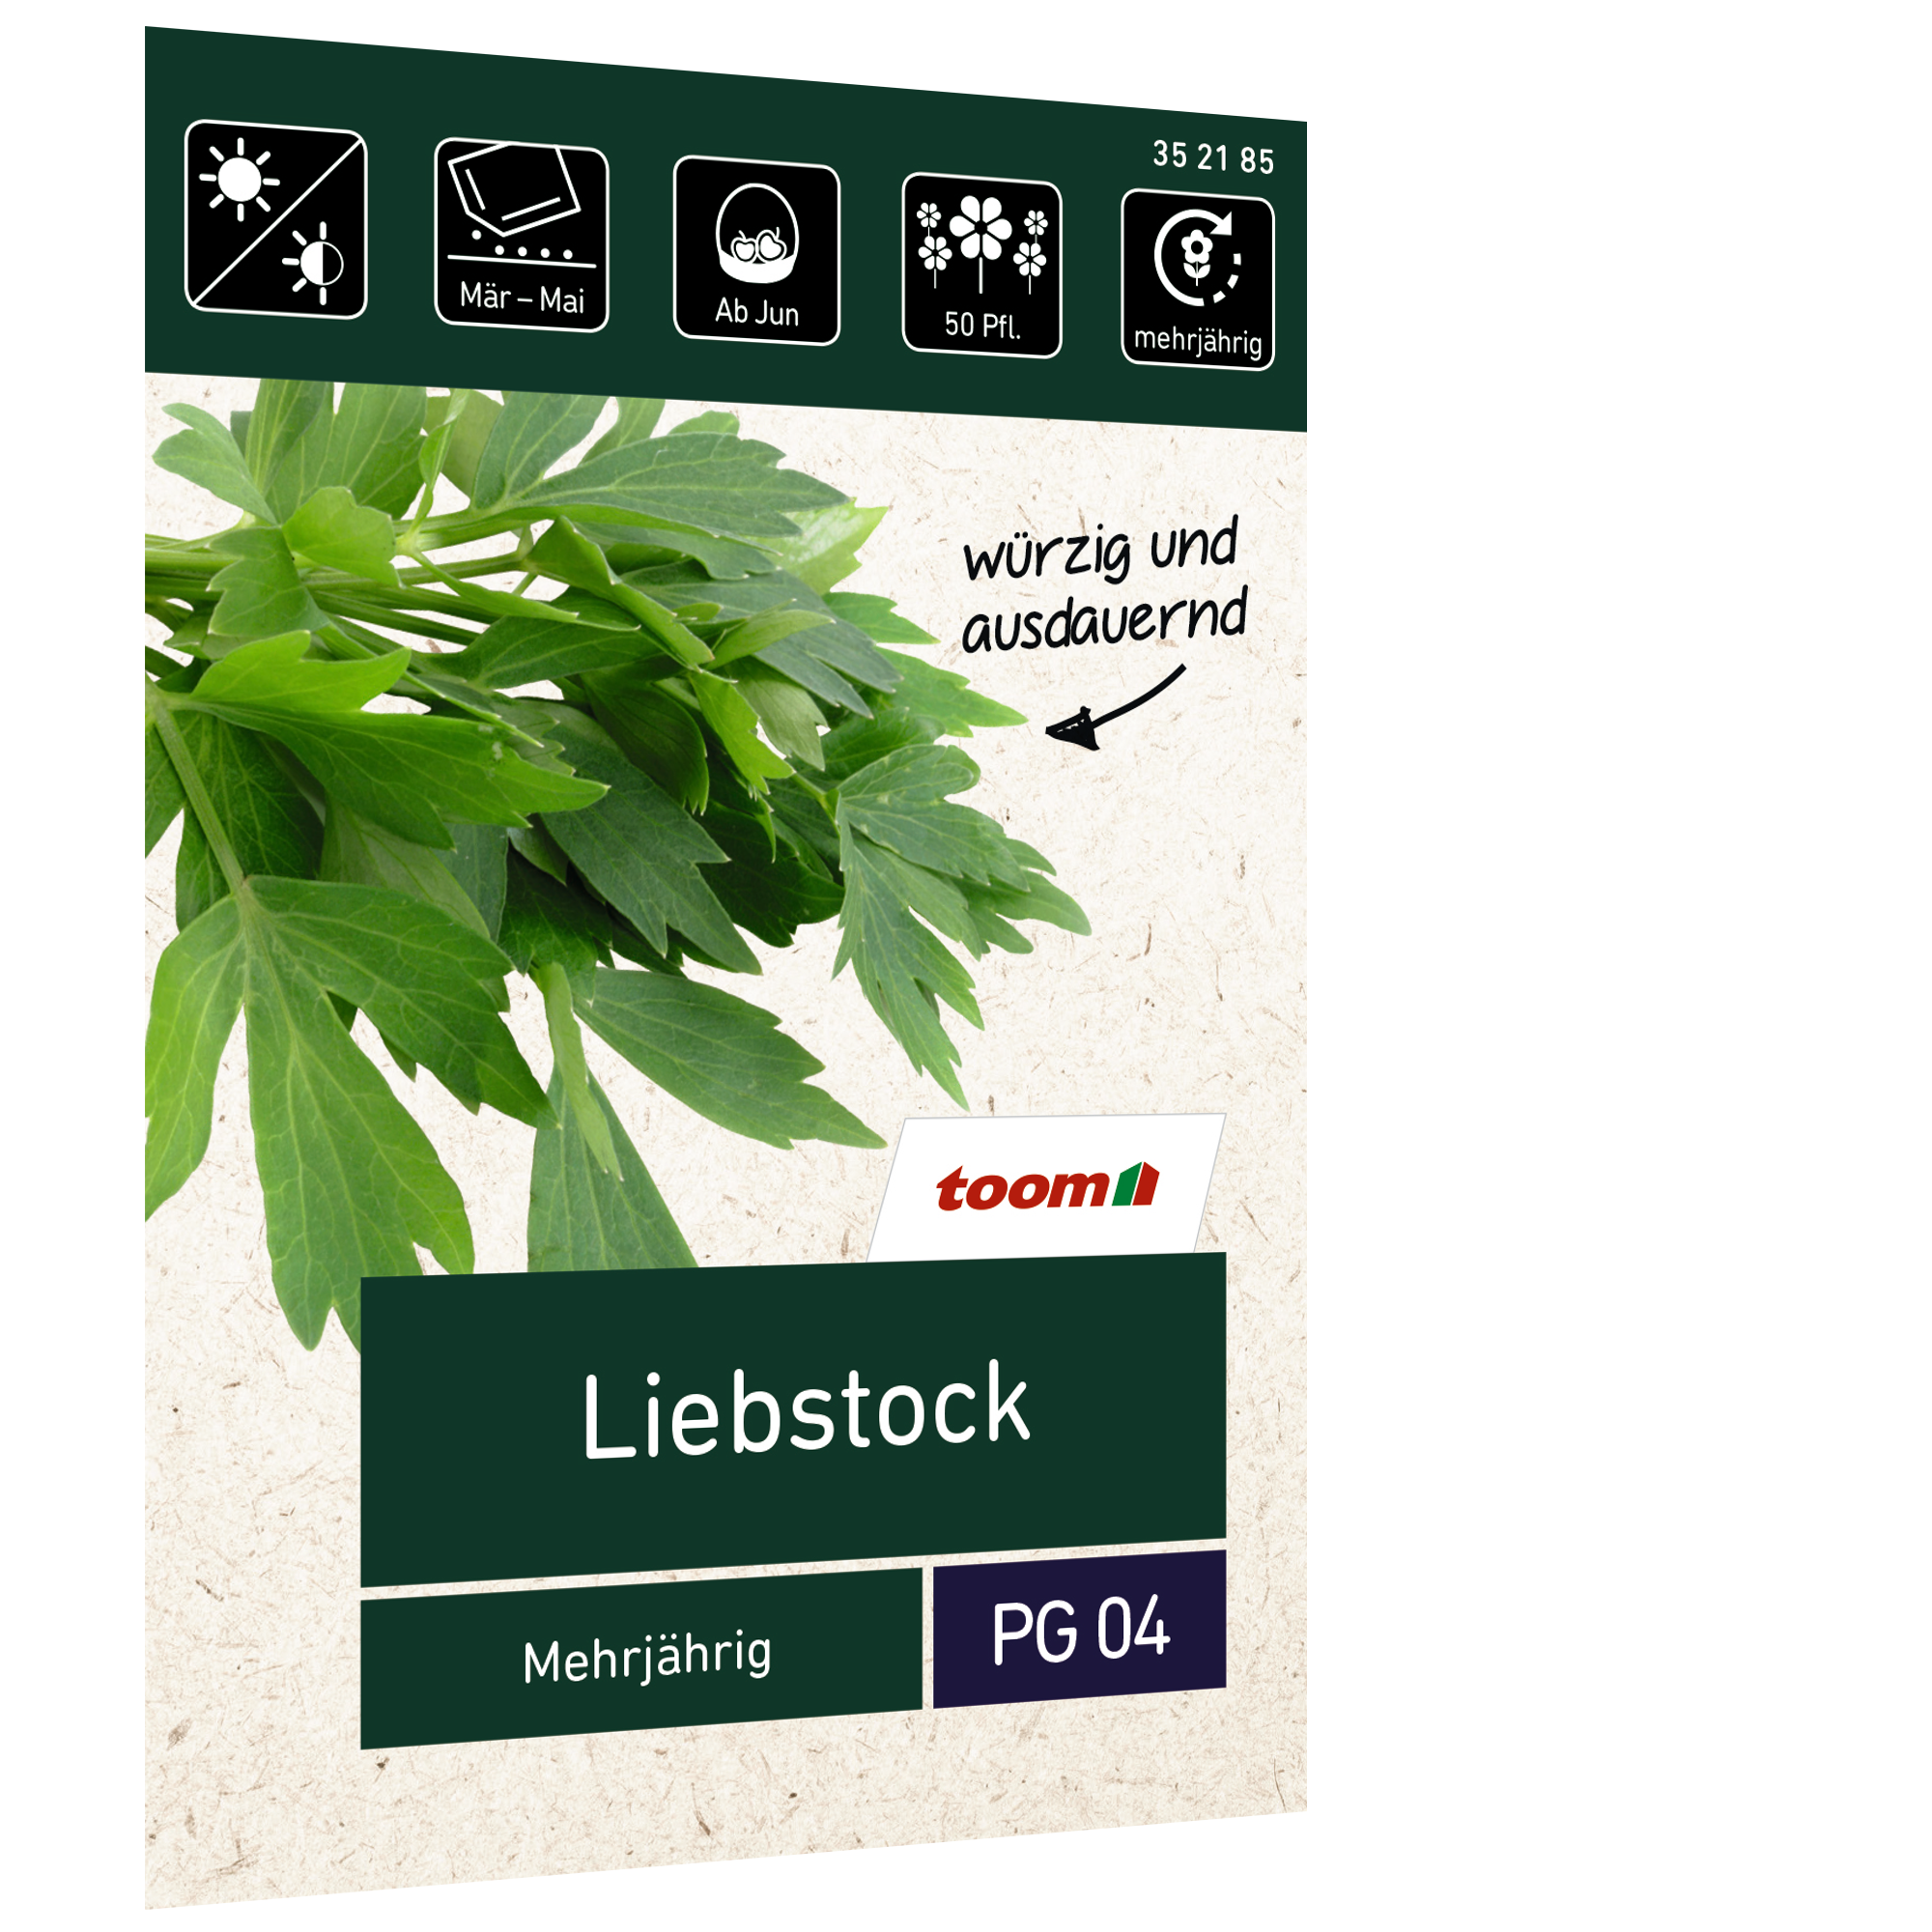 Liebstock 'Mehrjährig' + product picture